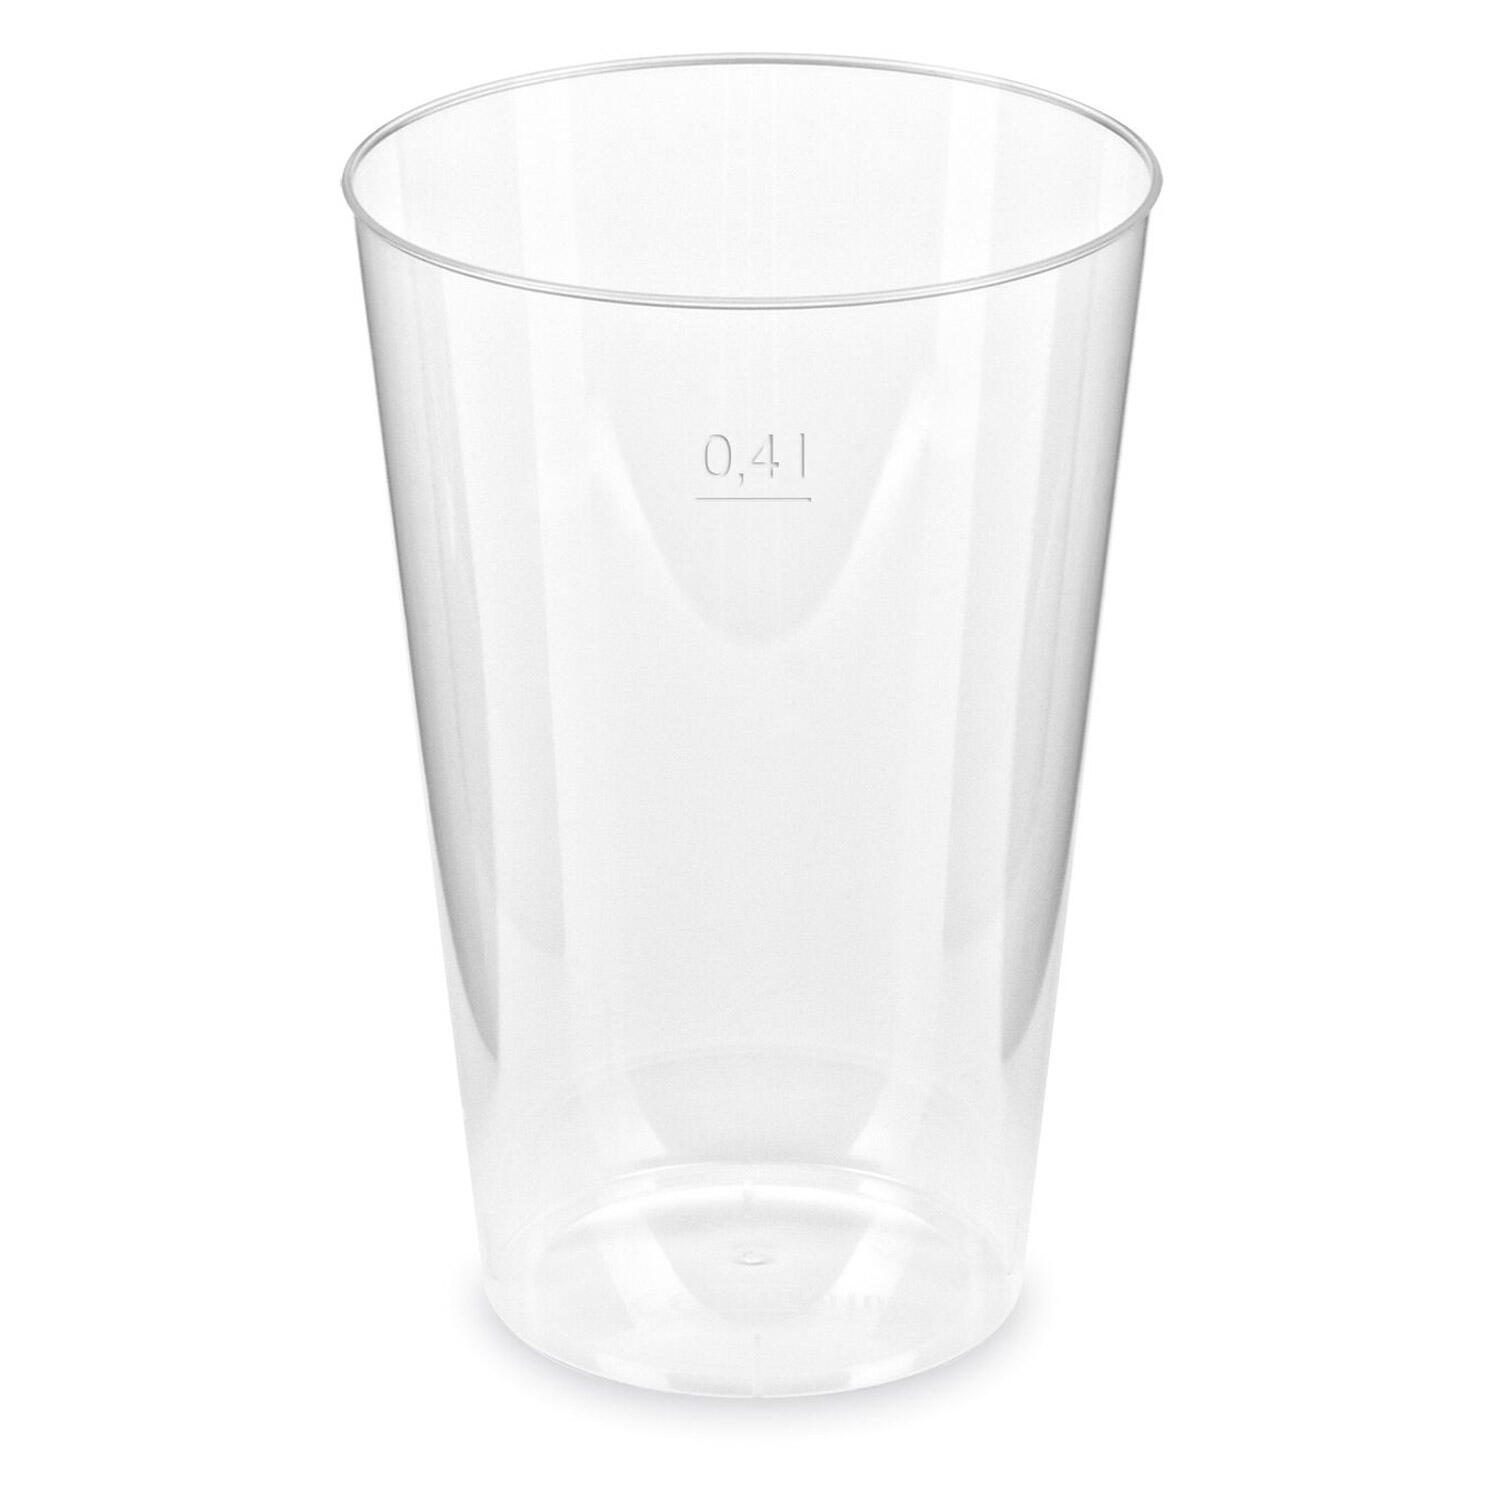 Trinkglas Trinkbecher Plastikbecher glasklar mit Eichstrich bei 400ml, 50 Stk.